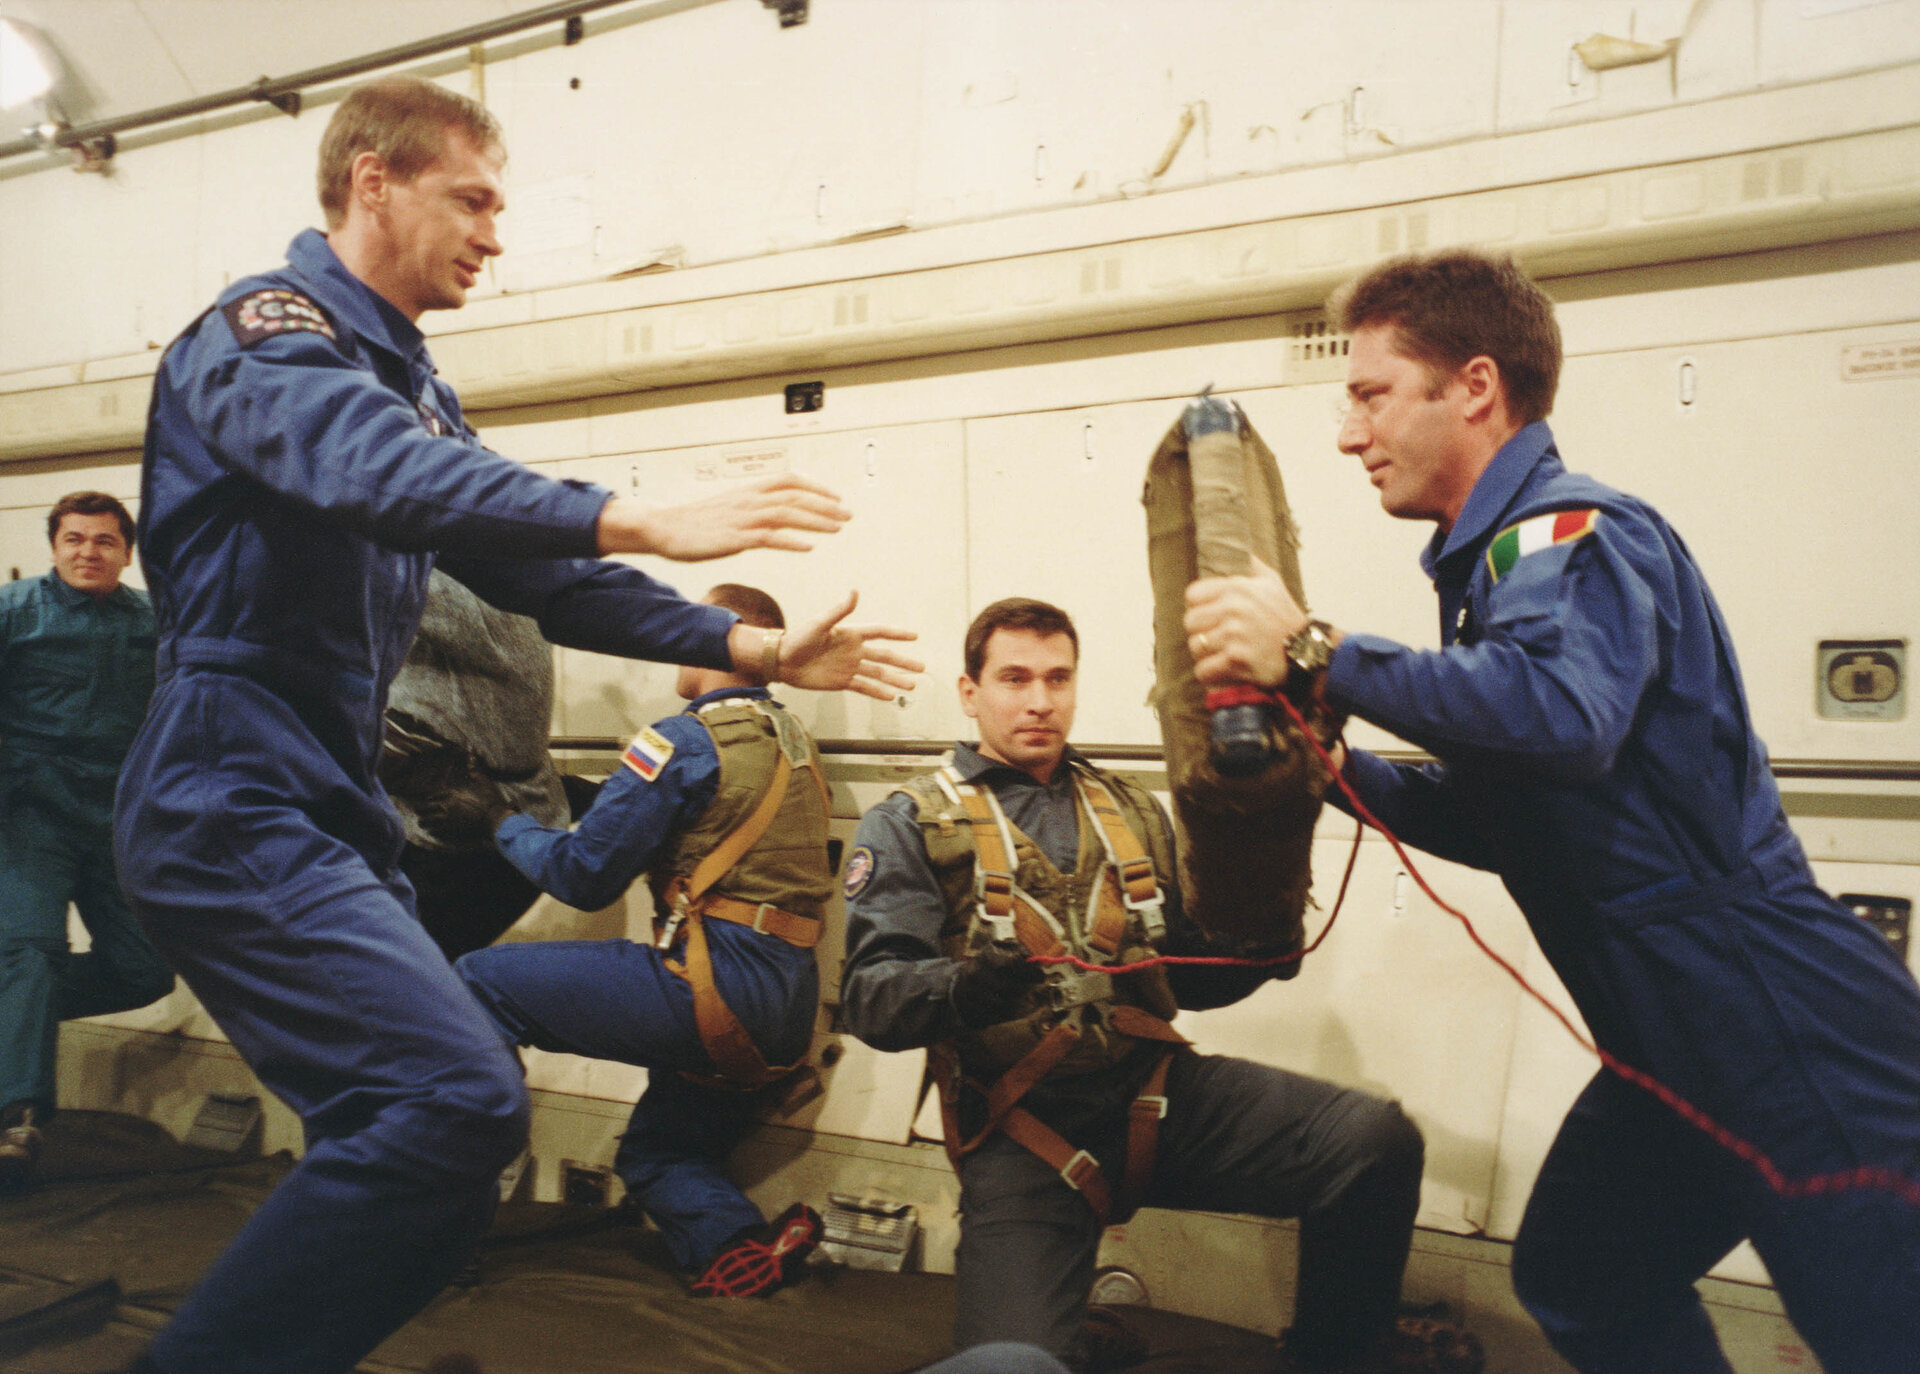 Vittori zero gravity flight training